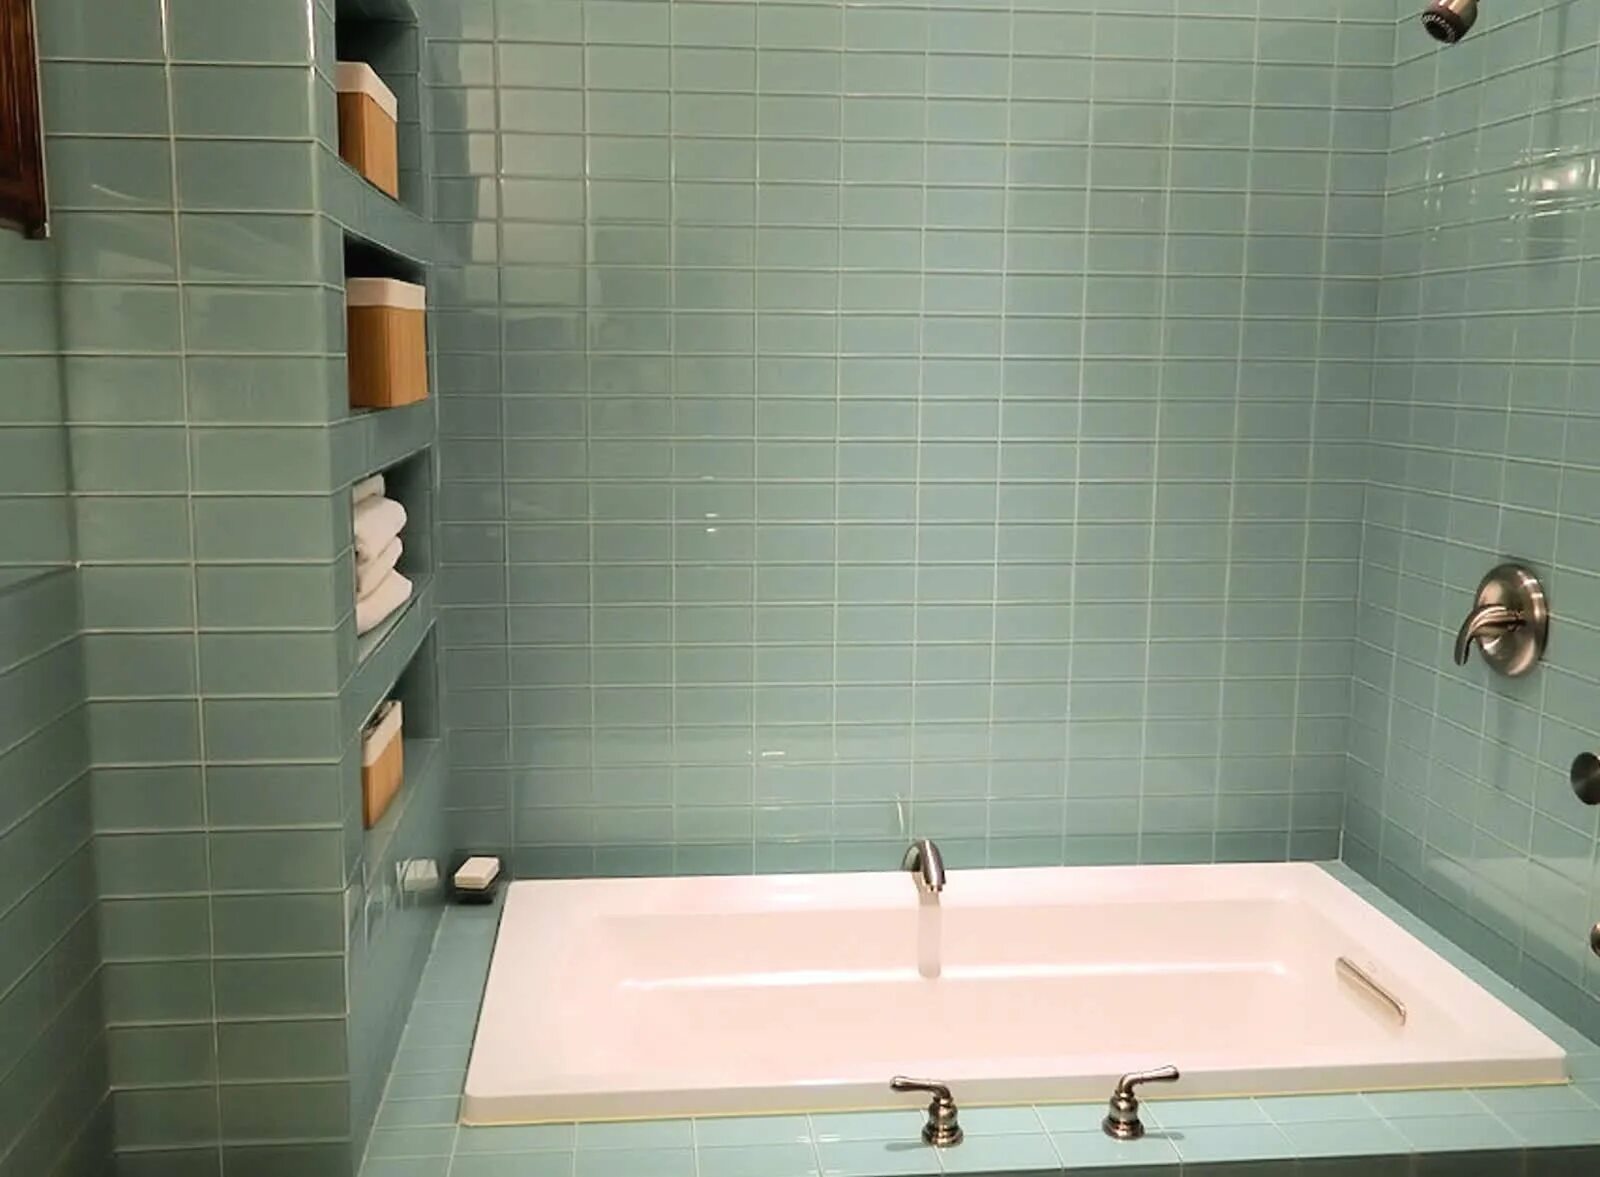 Ванная отделка плиткой. Ванная отделанная плиткой. Ванна выложена кафелем. Ванная стены выложены плиткой. Что можно положить в ванной